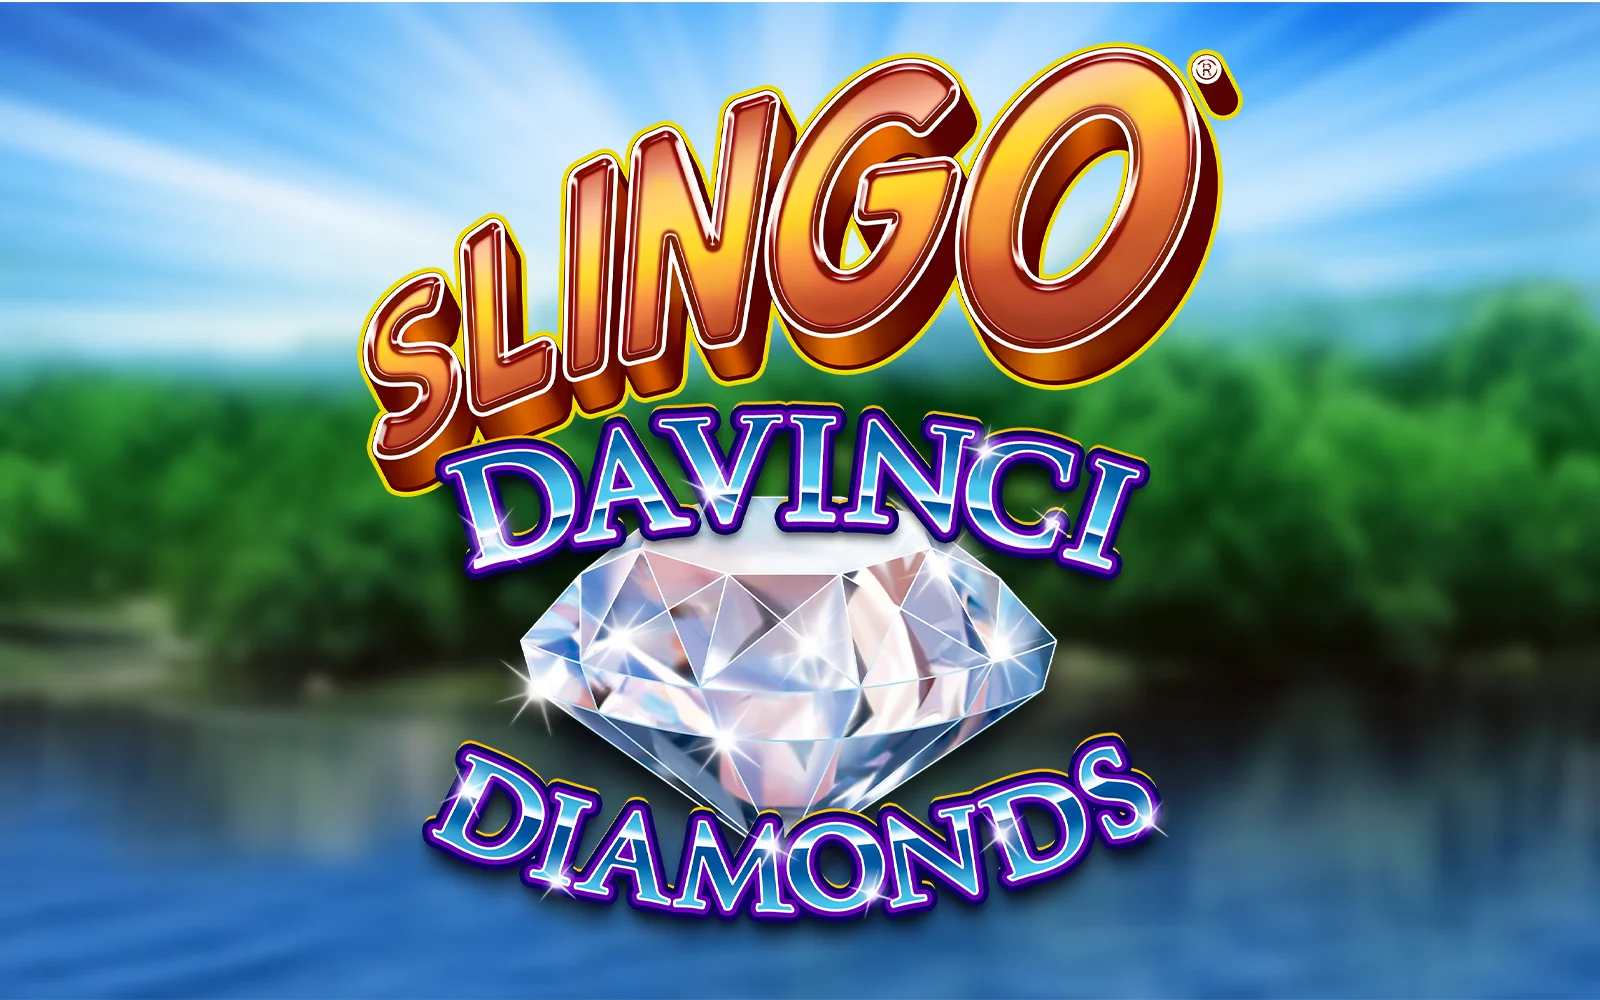 Joacă Slingo Da Vinci Diamonds în cazinoul online Starcasino.be